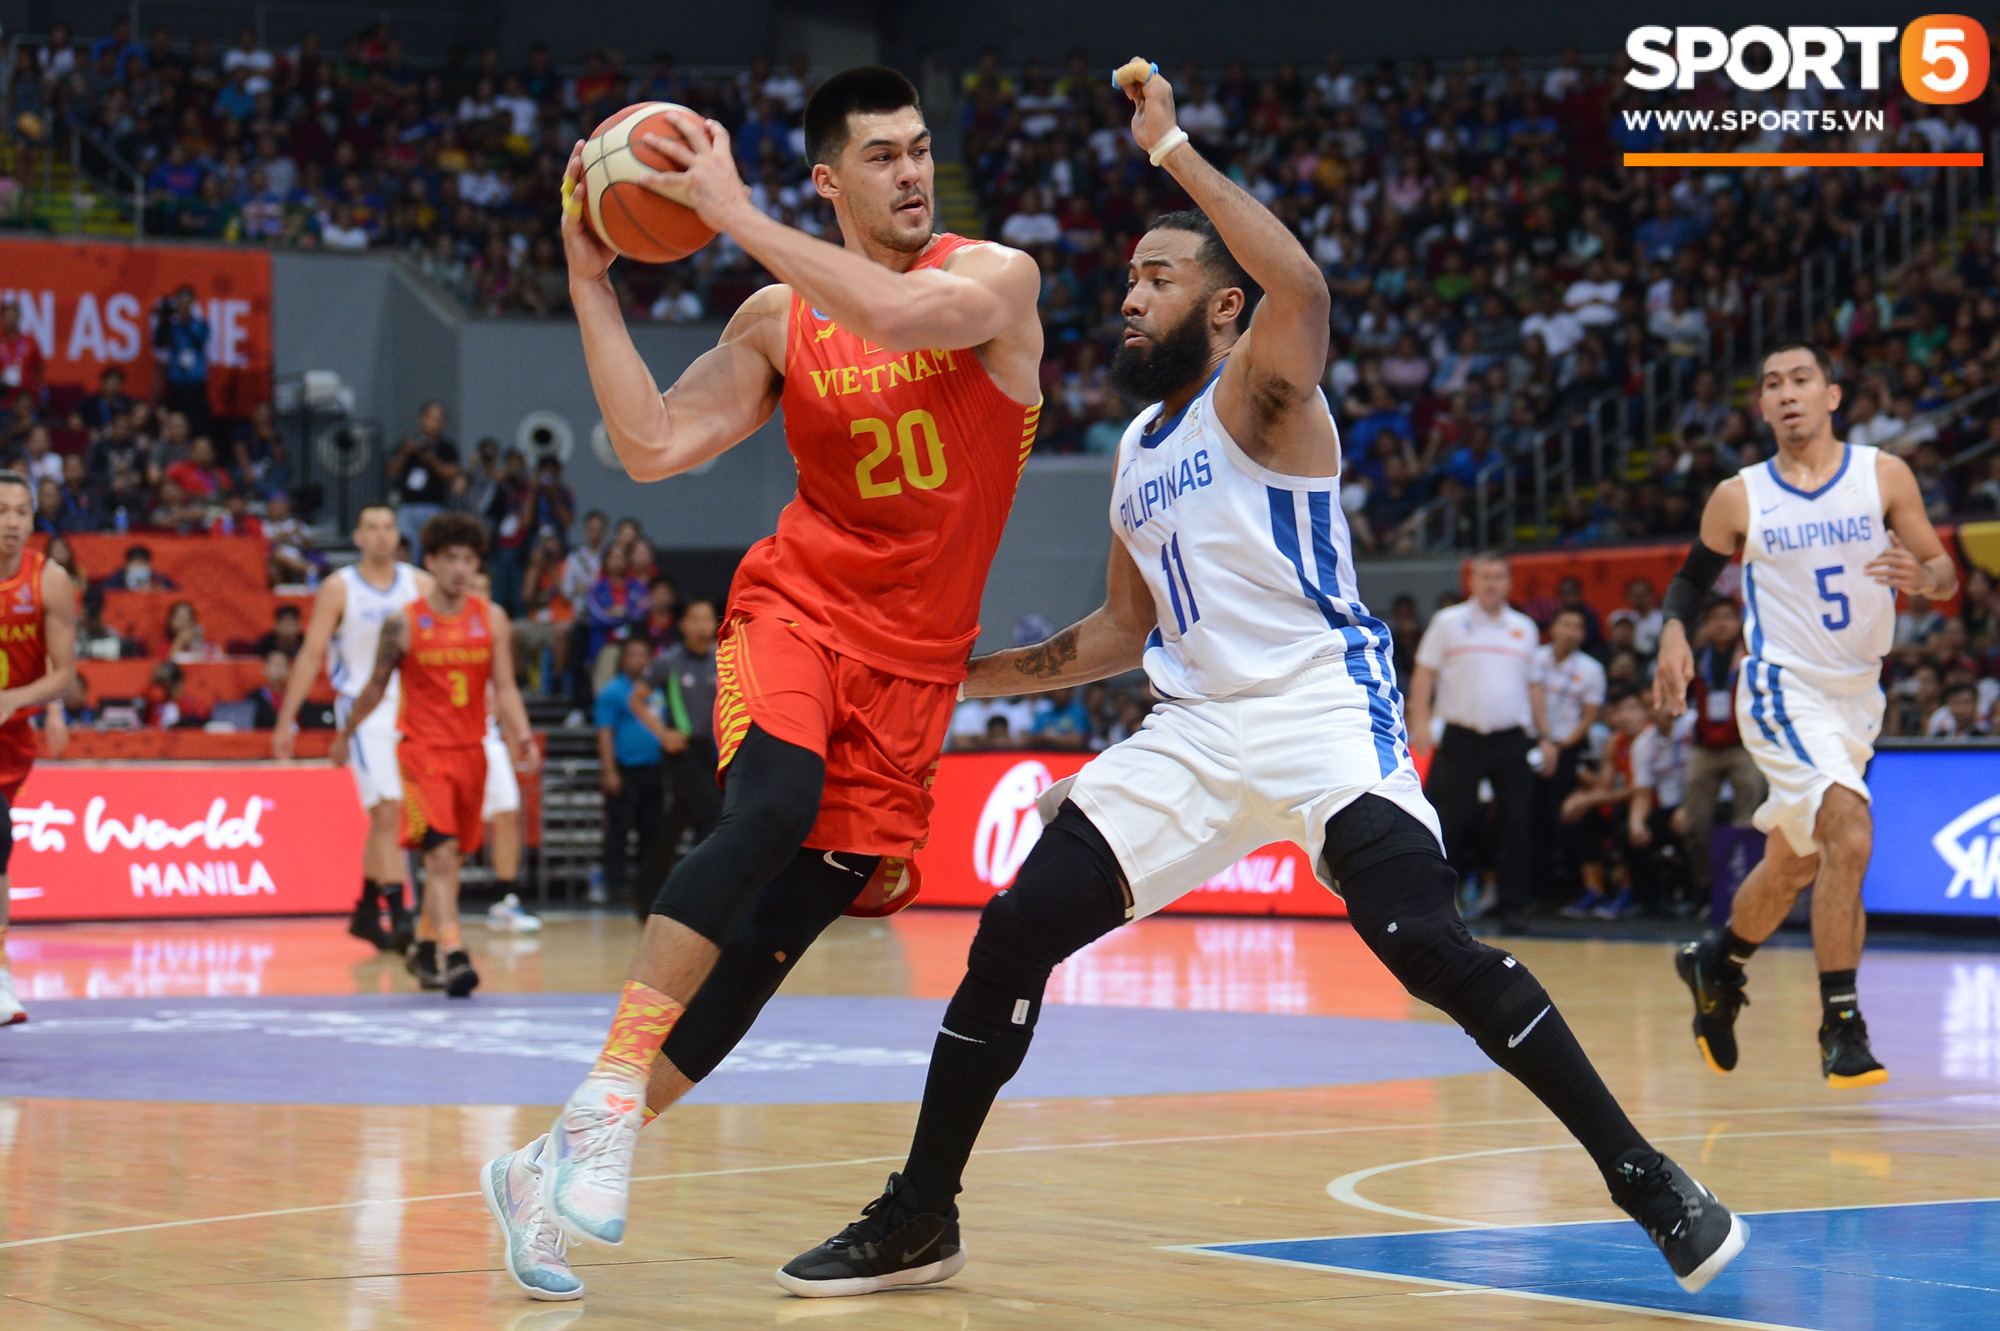 Choáng ngợp trước vẻ hào nhoáng của nhà thi đấu và sức ép từ 15.000 CĐV chủ nhà Philippines mà tuyển bóng rổ Việt Nam phải đối mặt - Ảnh 7.